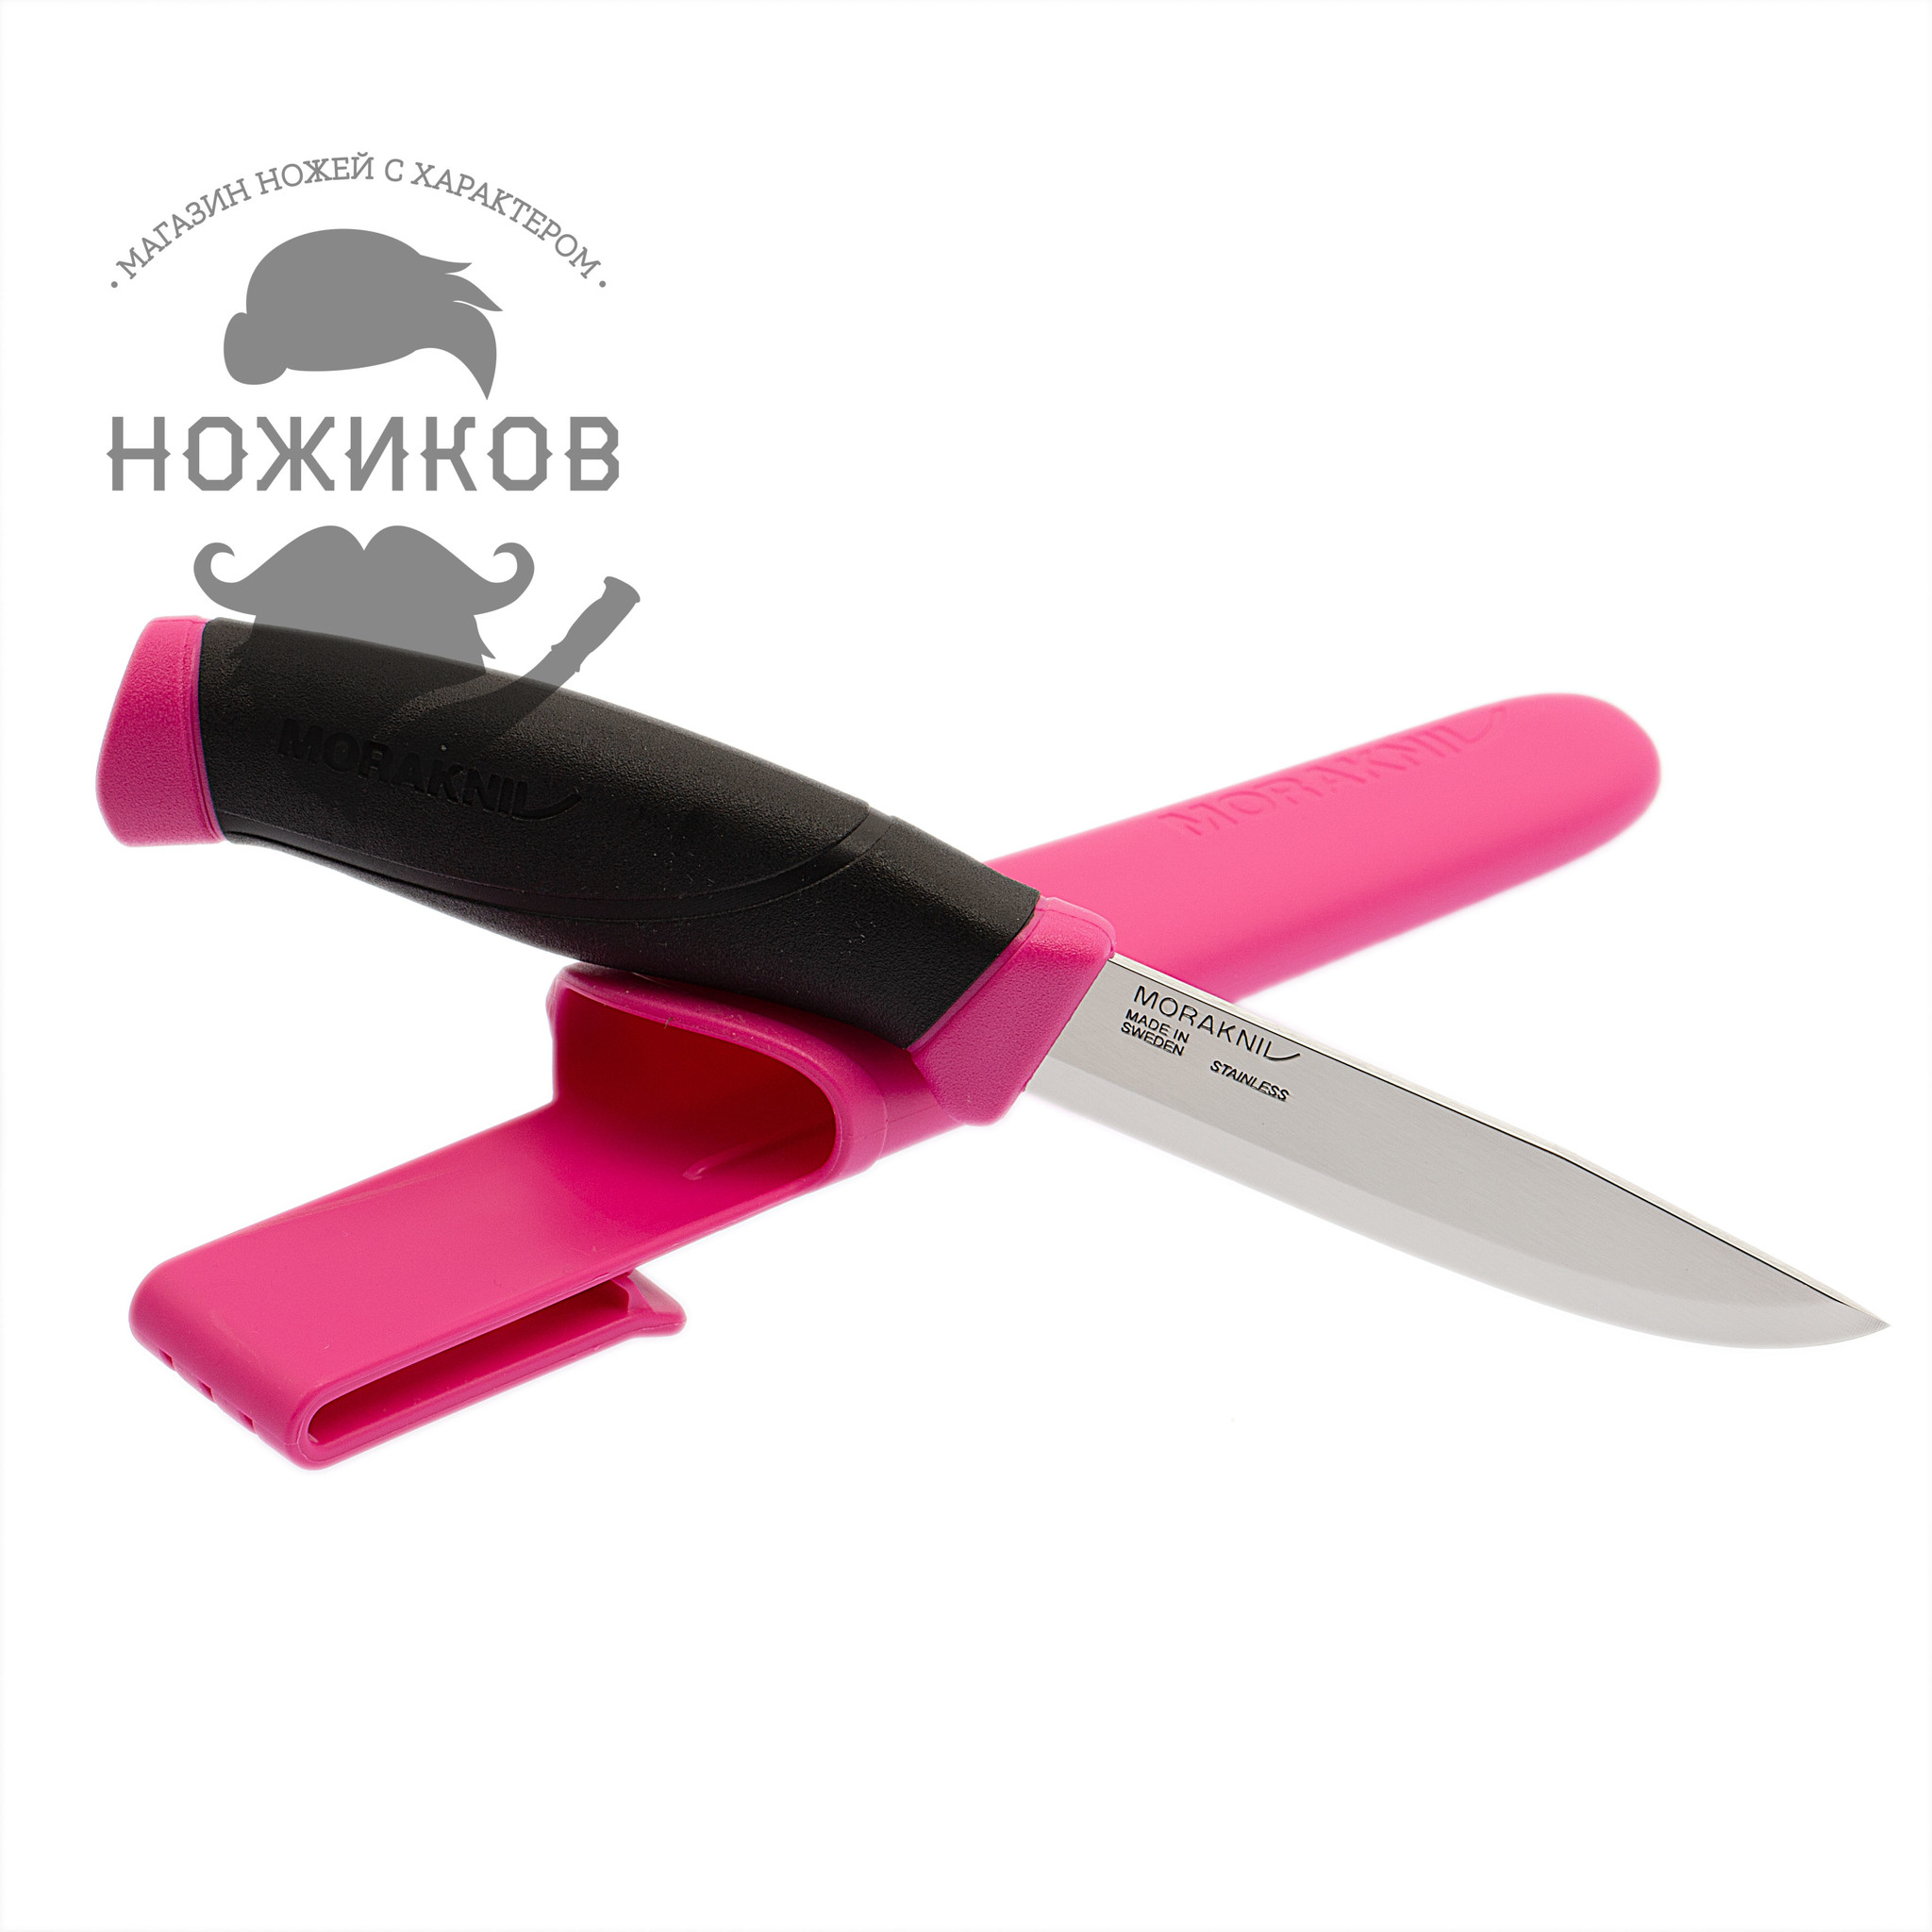 Нож с фиксированным лезвием Morakniv Companion Magenta, сталь Sandvik 12C27, рукоять резина/пластик, пурпурный от Ножиков